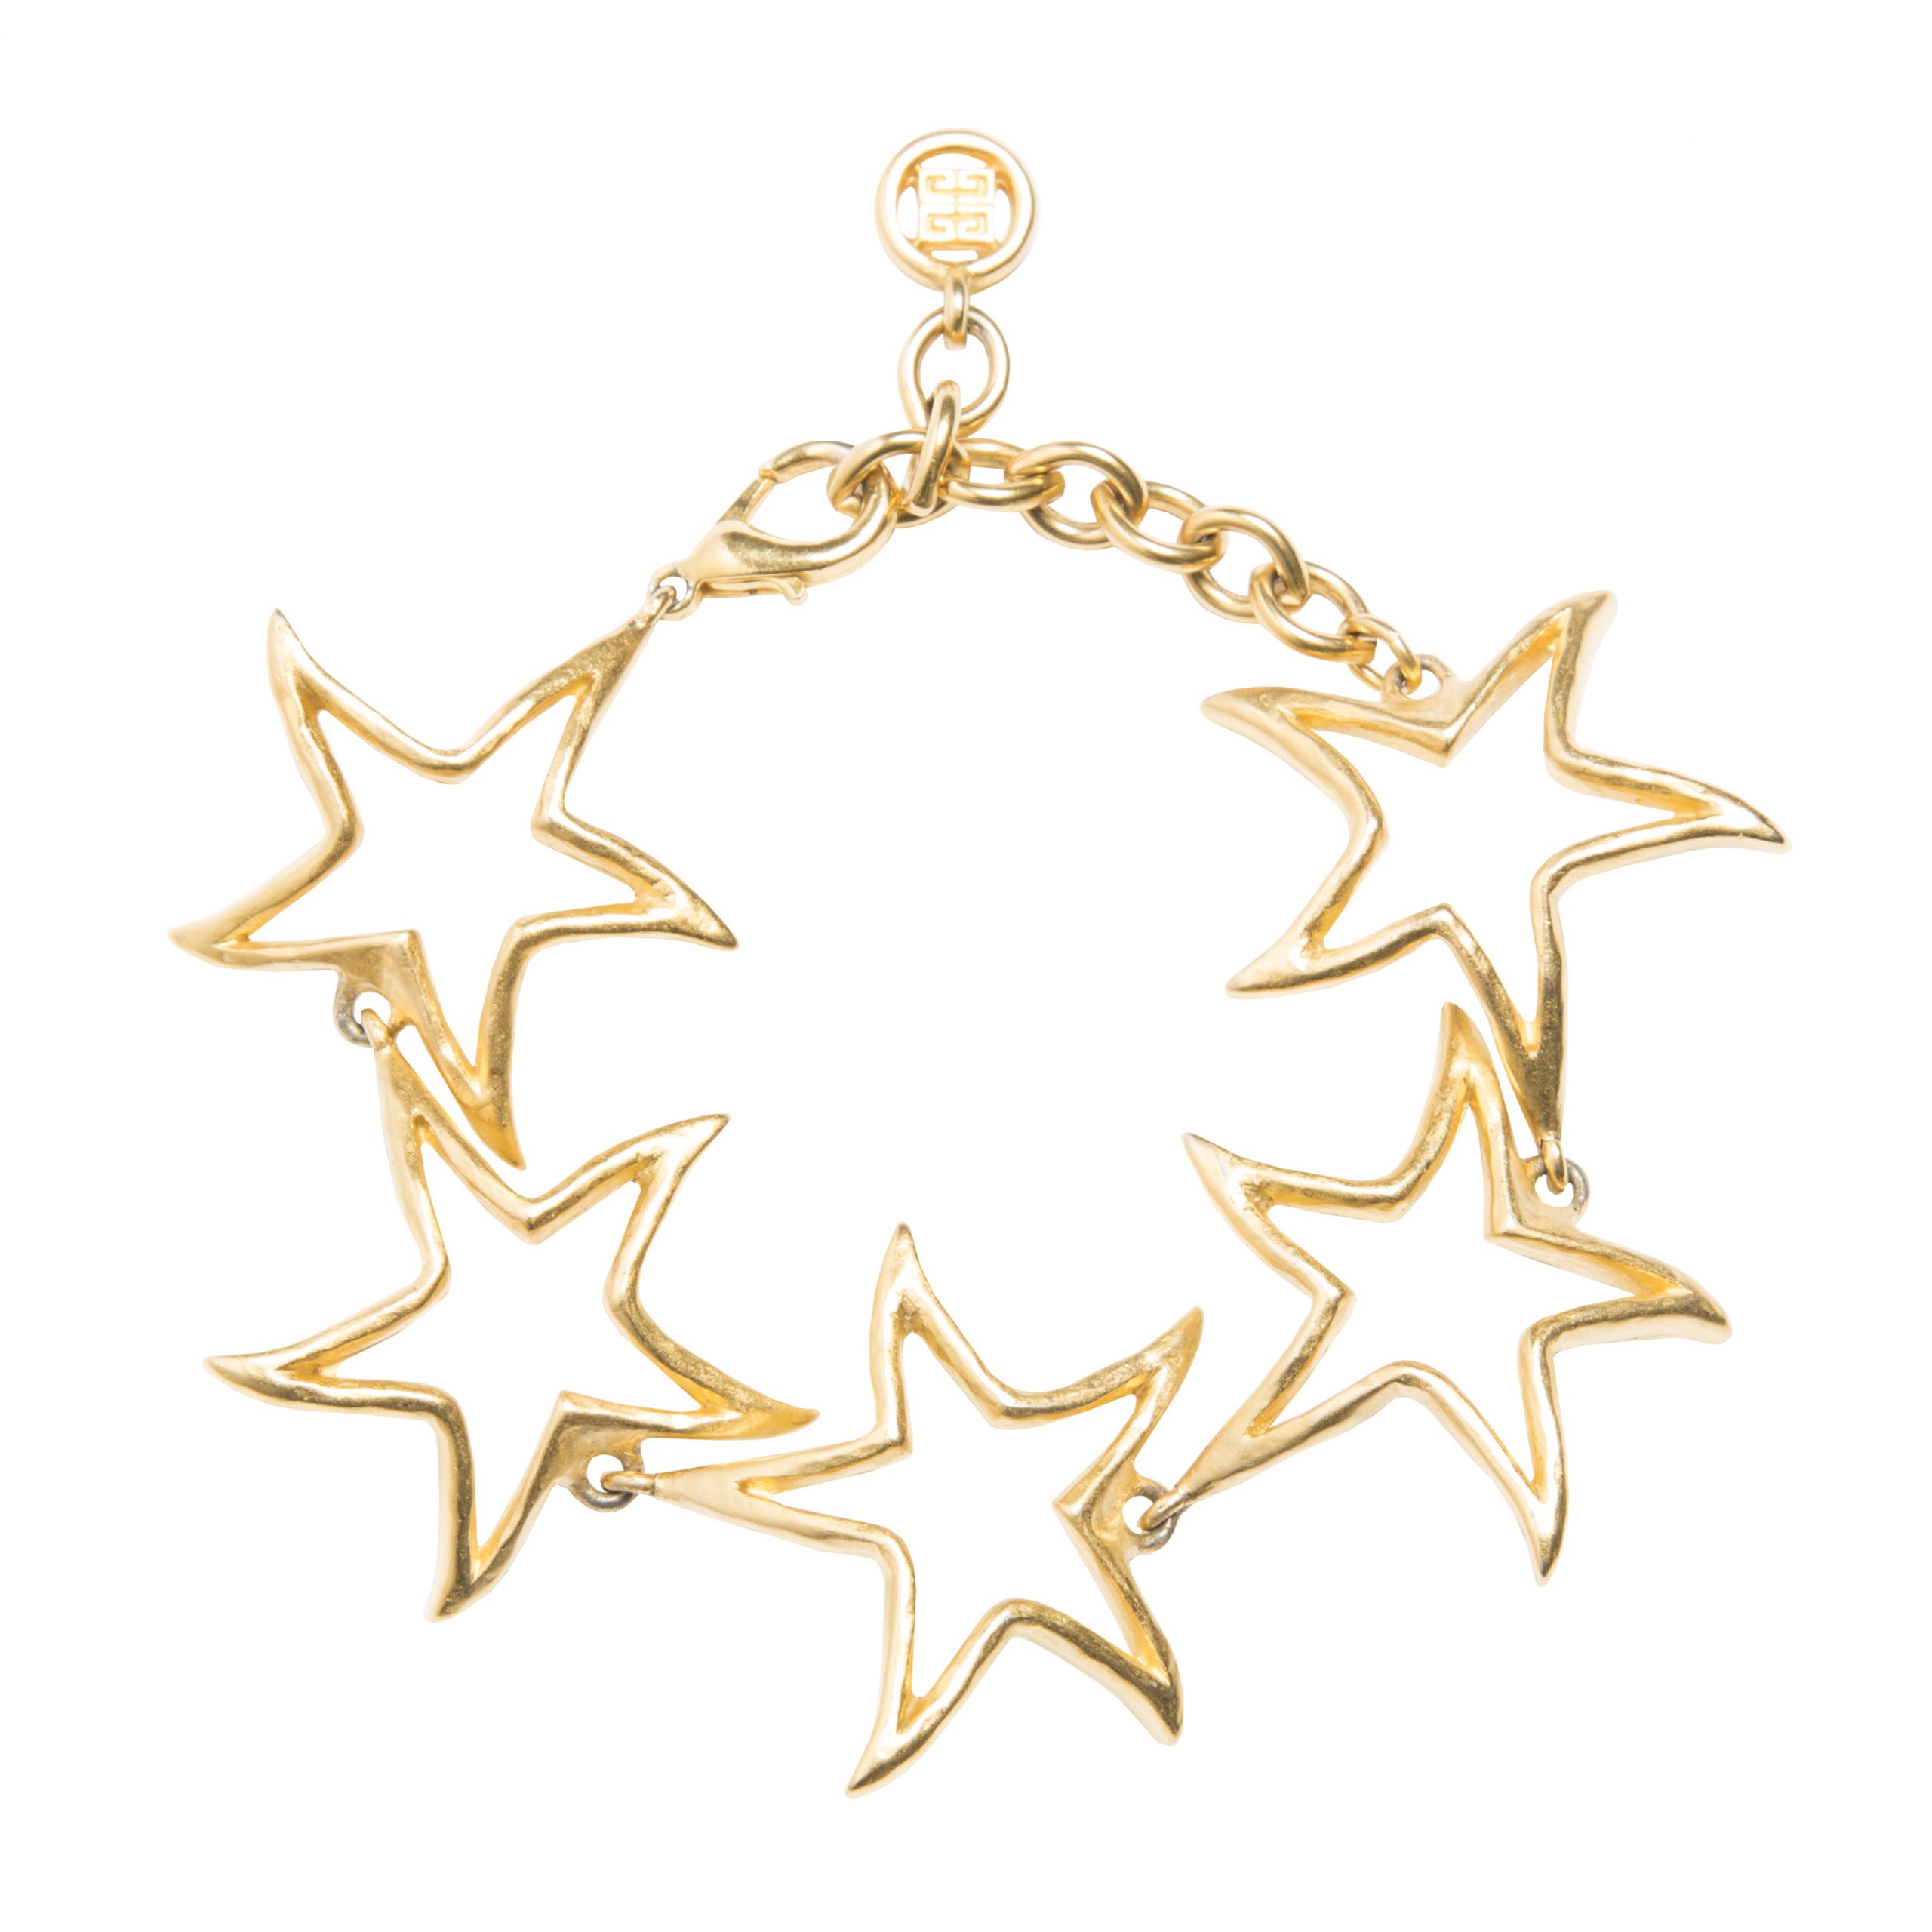 Vintage gold bracelet with star motifs